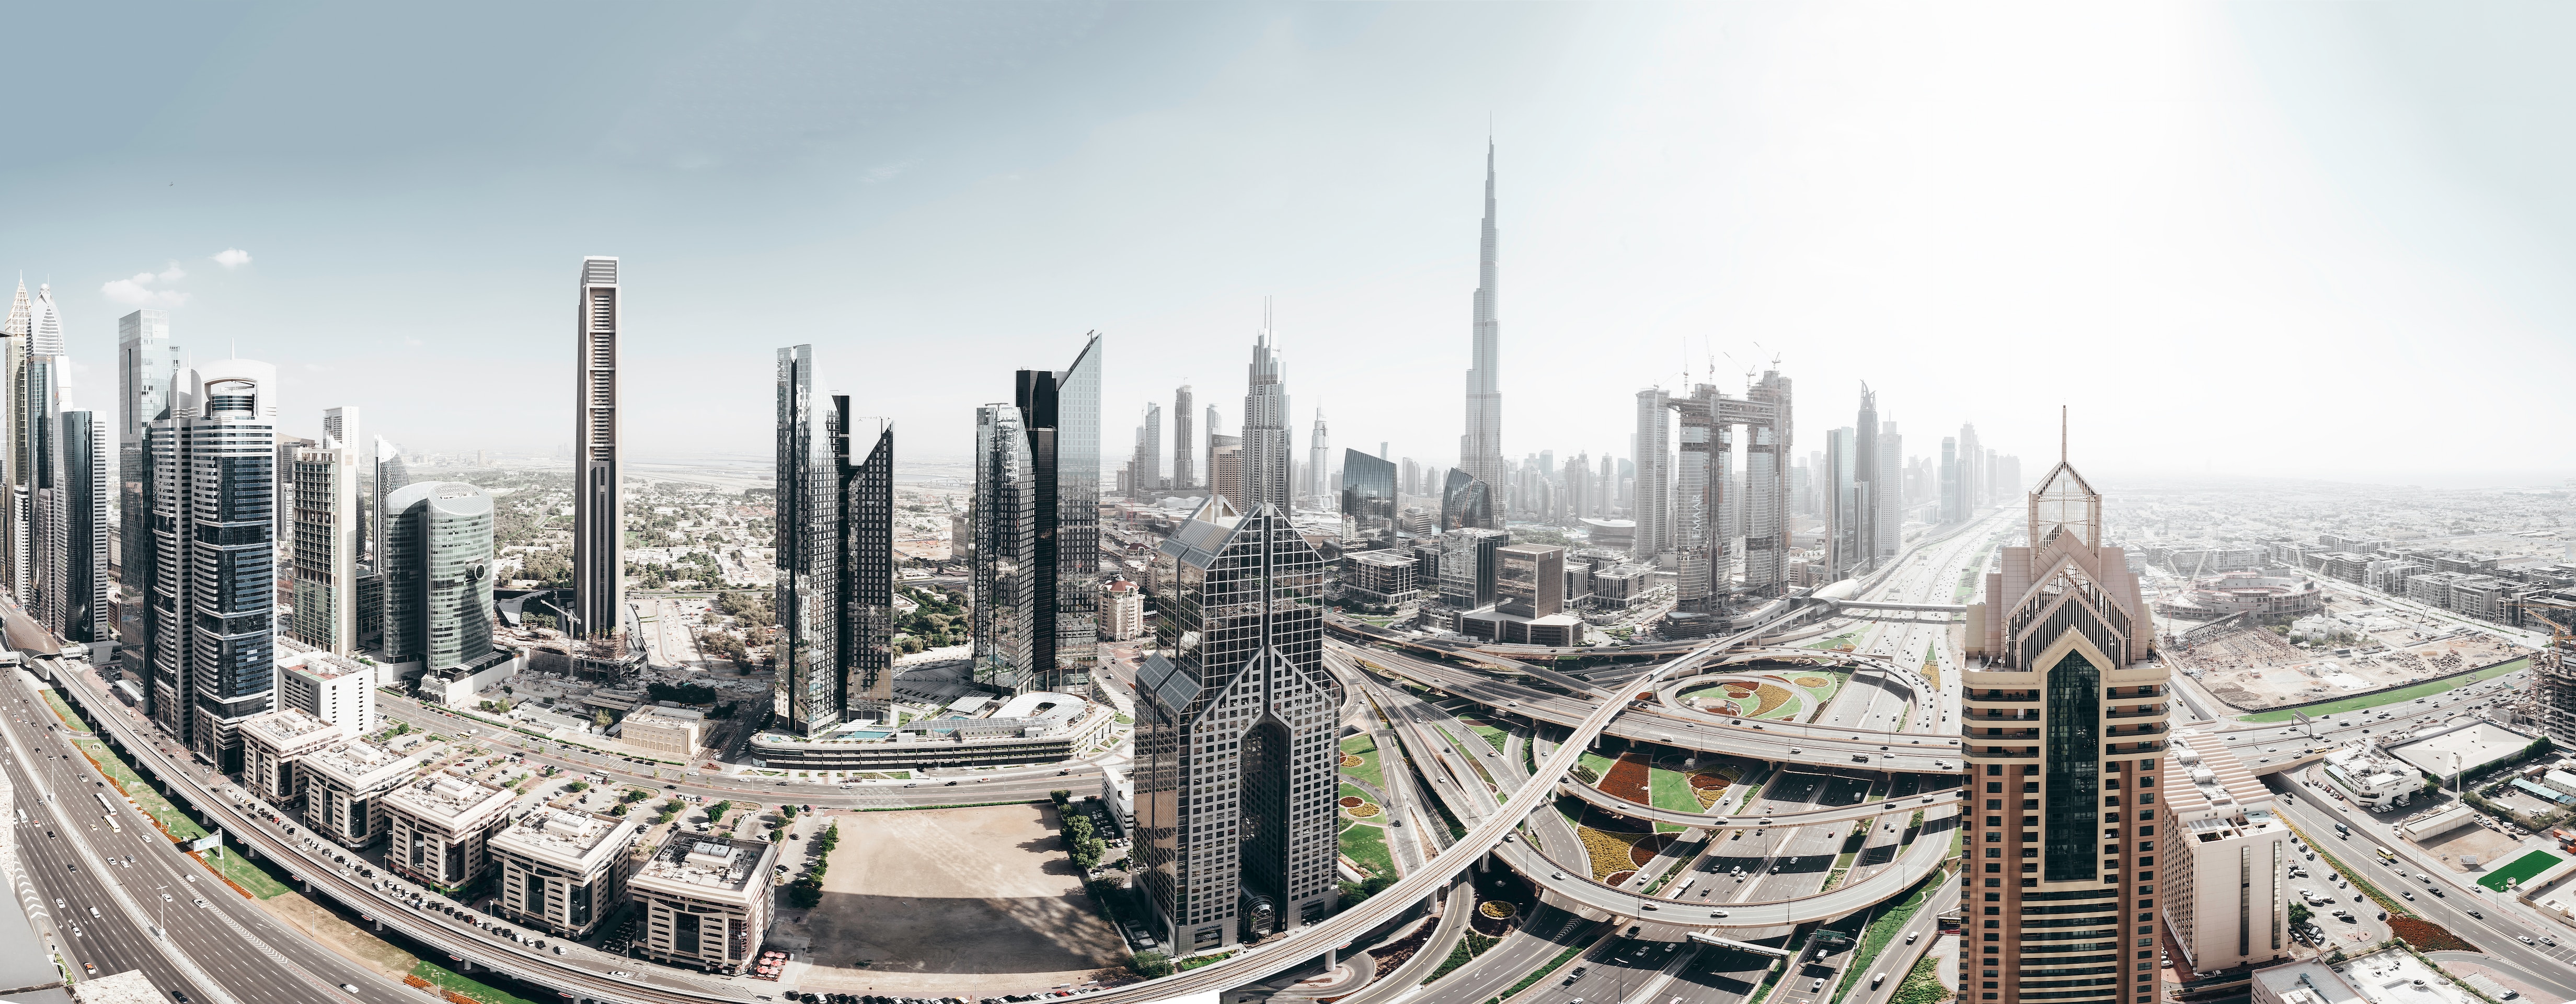 Will Dubai be unlivable?